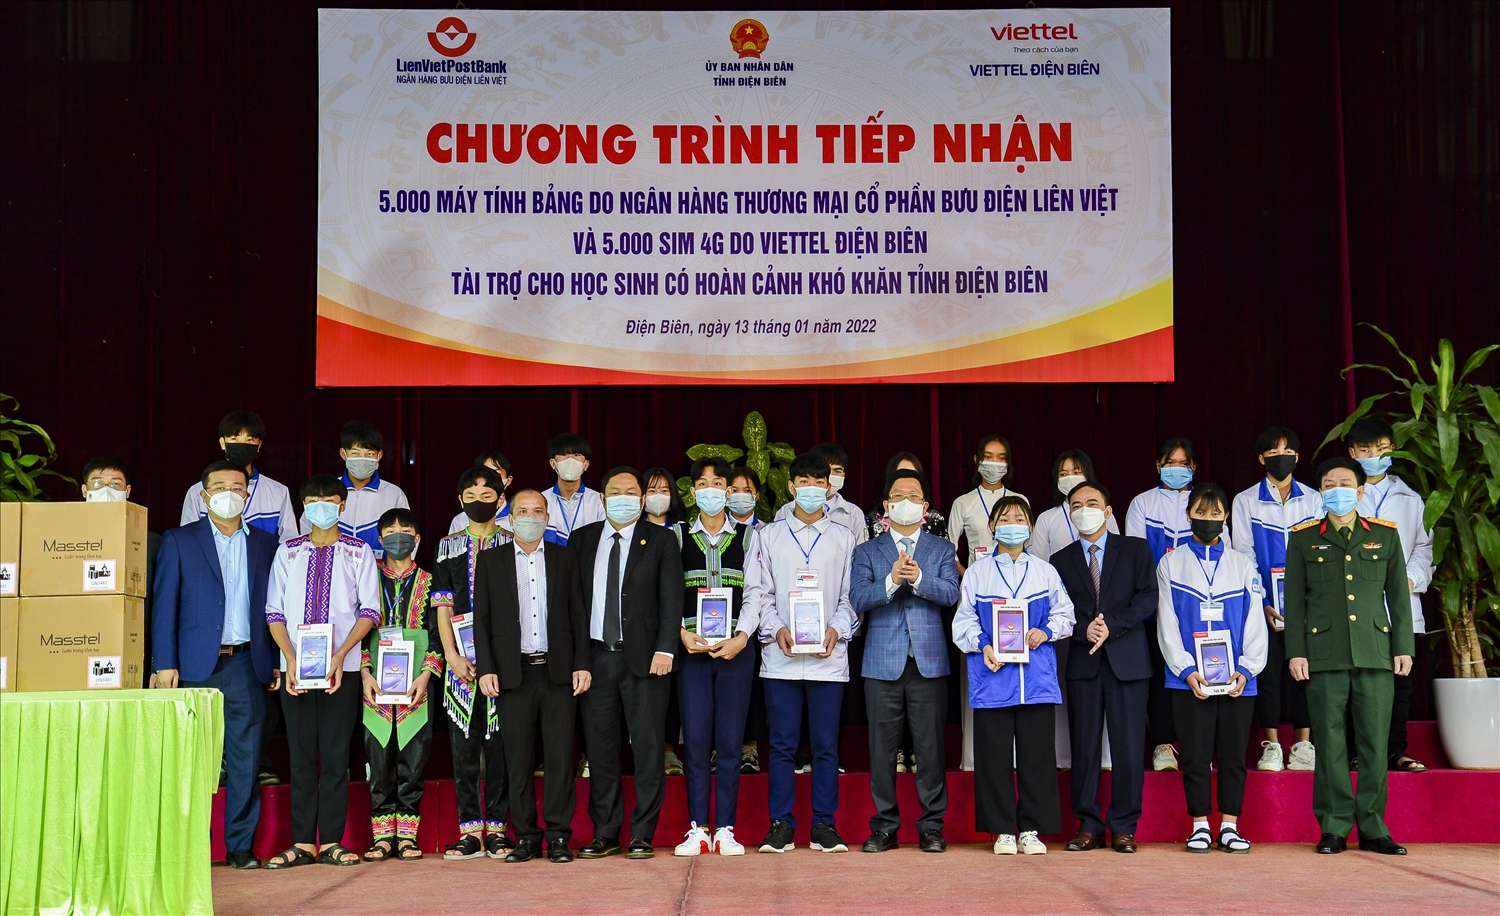 Ông Huỳnh Ngọc Huy, Chủ tịch Hội đồng quản trị Ngân hàng Thương mại cổ phần Bưu điện Liên Việt trao máy tính bảng cho đại diện 20 học sinh nghèo của tỉnh Điện Biên